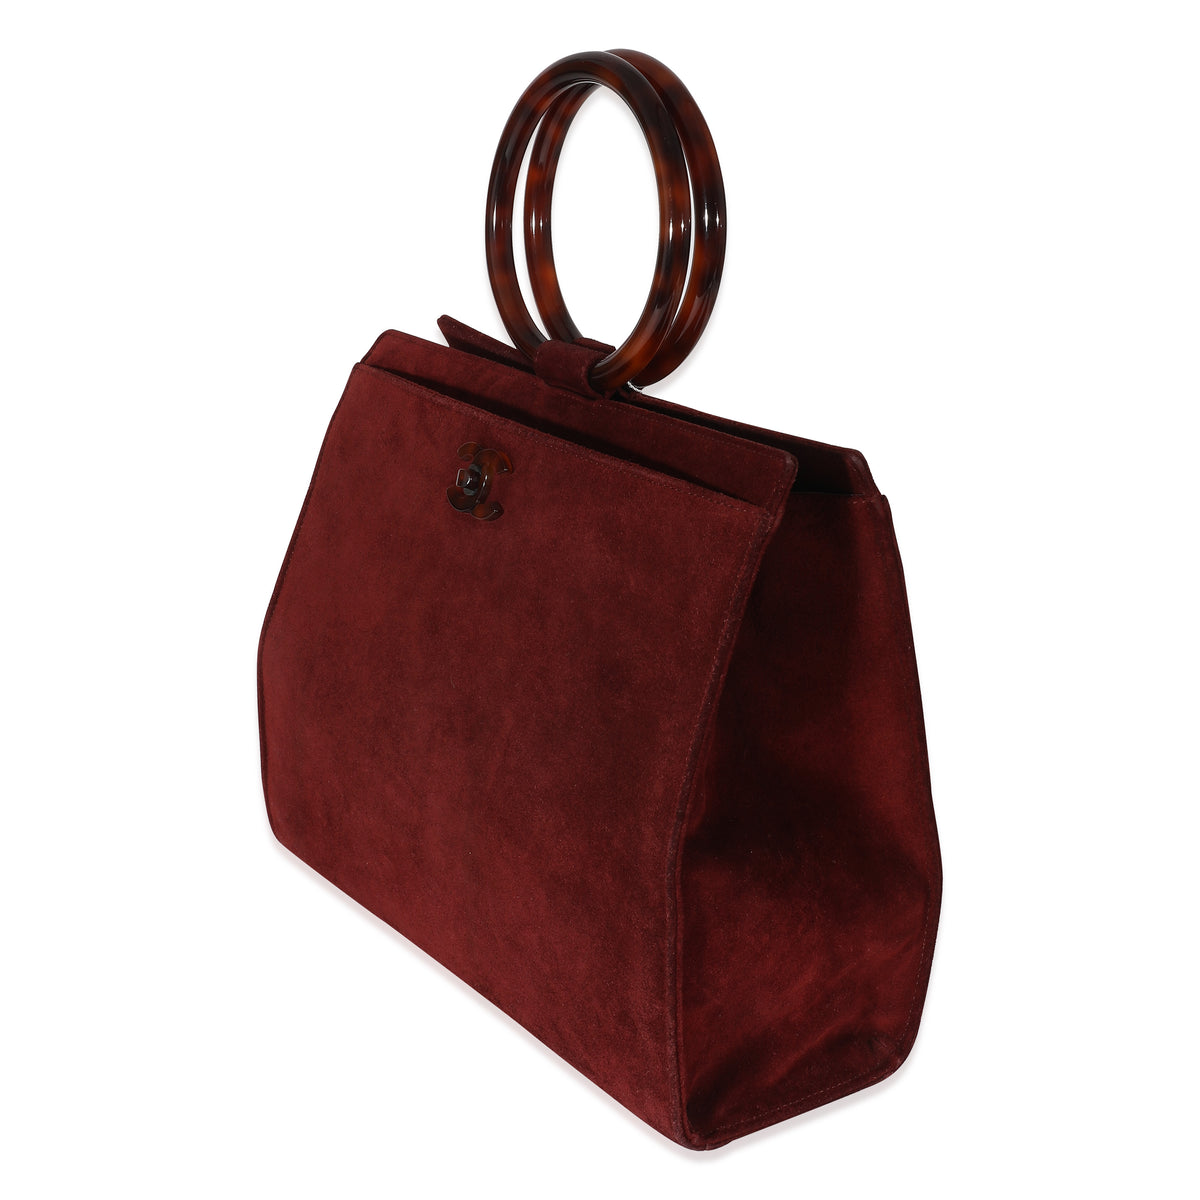 Chanel Red Suede Ring Top Handle Bag, myGemma, DE